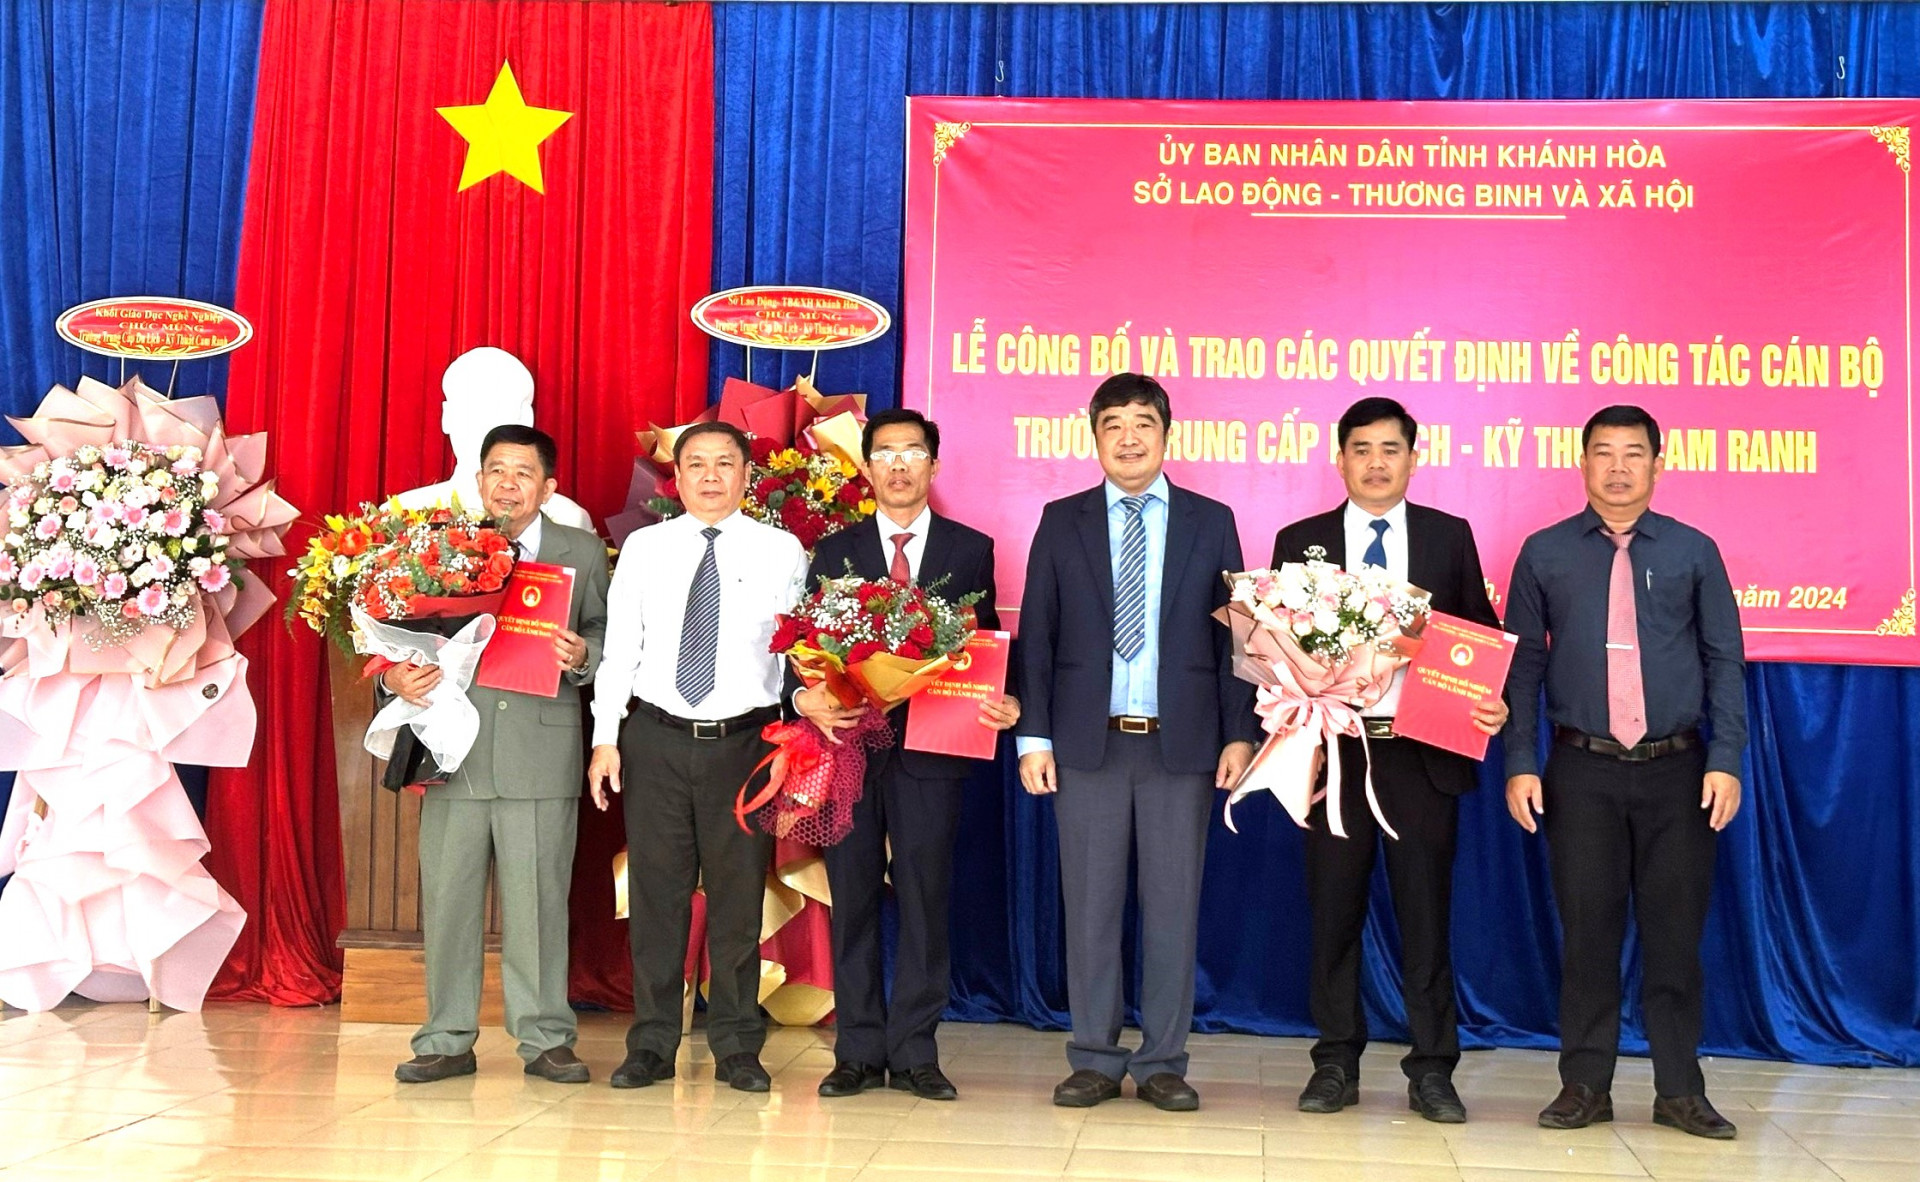 Lãnh đạo Sở Lao động - Thương binh và Xã hội trao các quyết định của UBND tỉnh về việc thành lập Trường Trung cấp Du lịch - Kỹ thuật Cam Ranh.